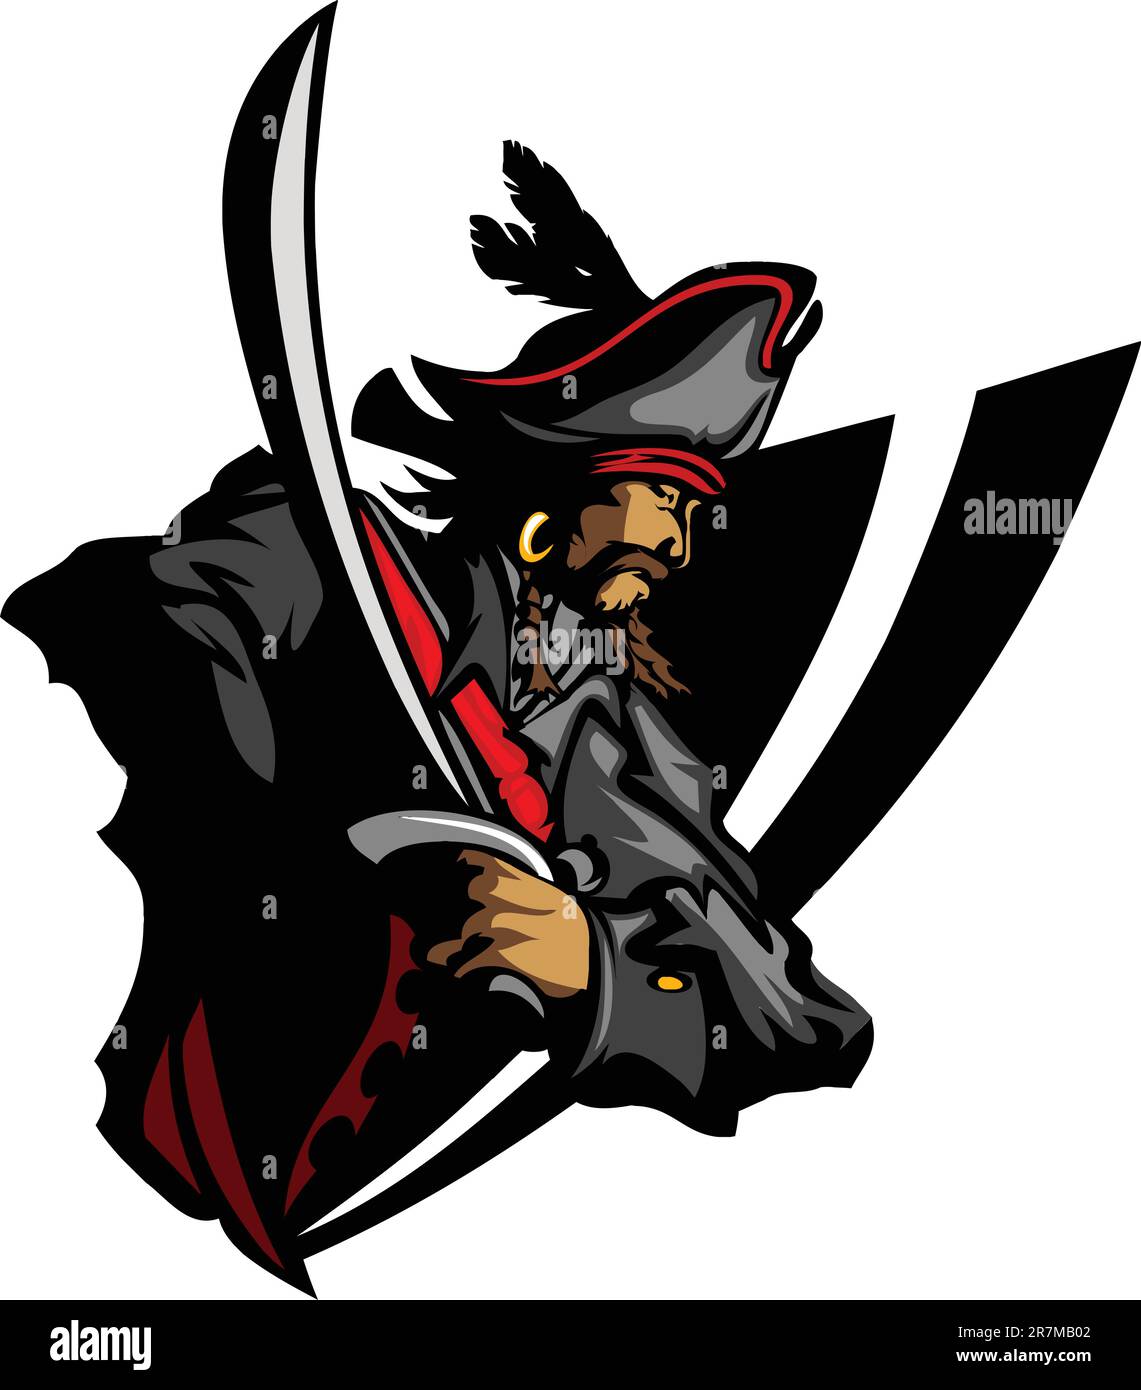 Piratenkapitän mit Schwert und Hut mit Feather Graphic Image Stock Vektor